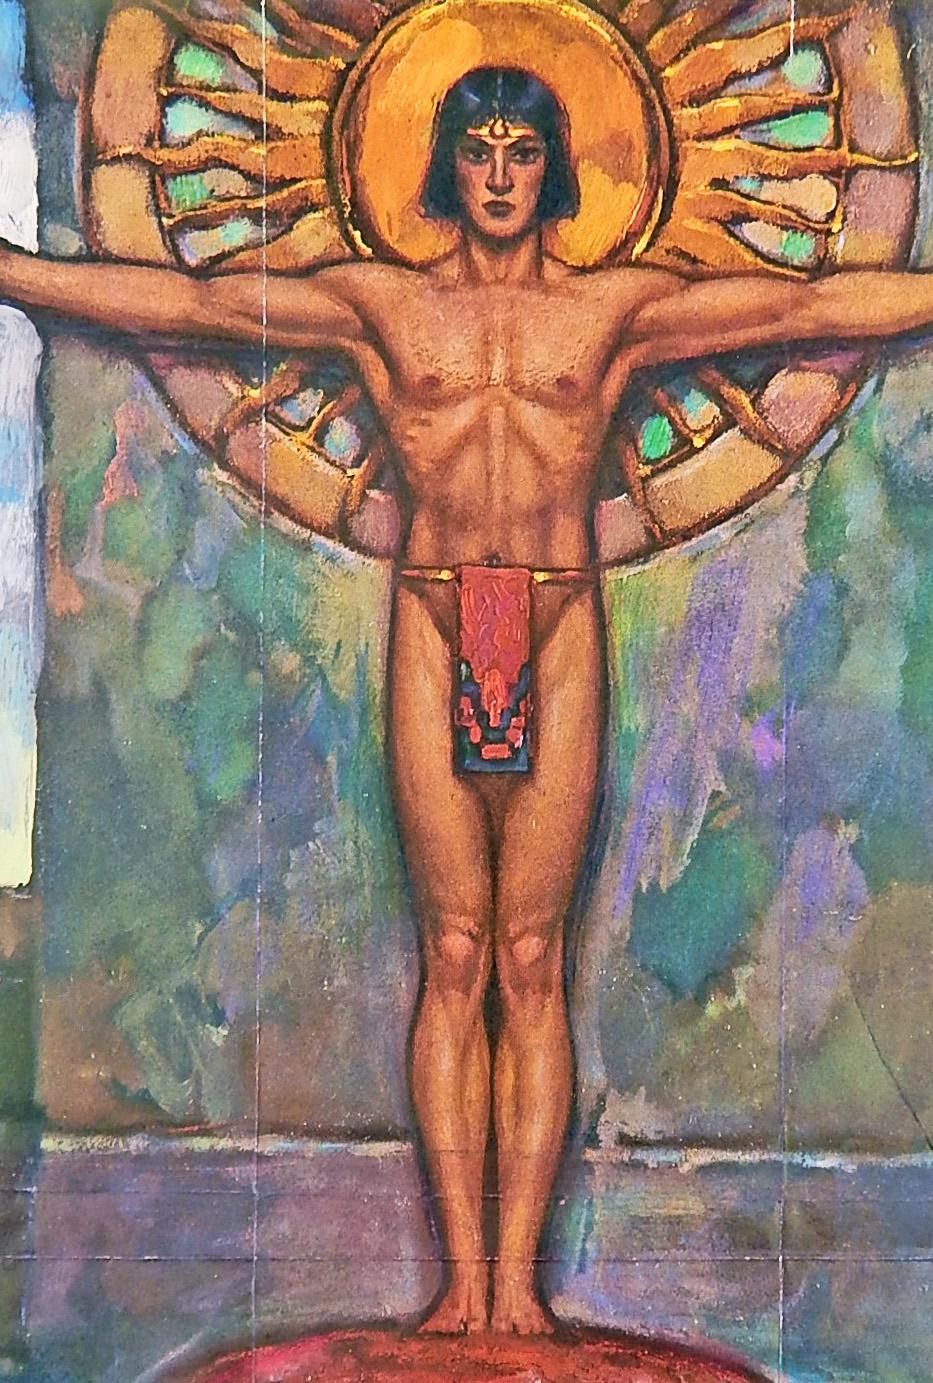 Cette représentation stylisée et richement colorée, presque cinématographique, d'un jeune homme nu toltèque par John Garth montre le personnage tenant un couteau et un calice, faisant allusion à un sacrifice humain, debout au-dessus de deux figures